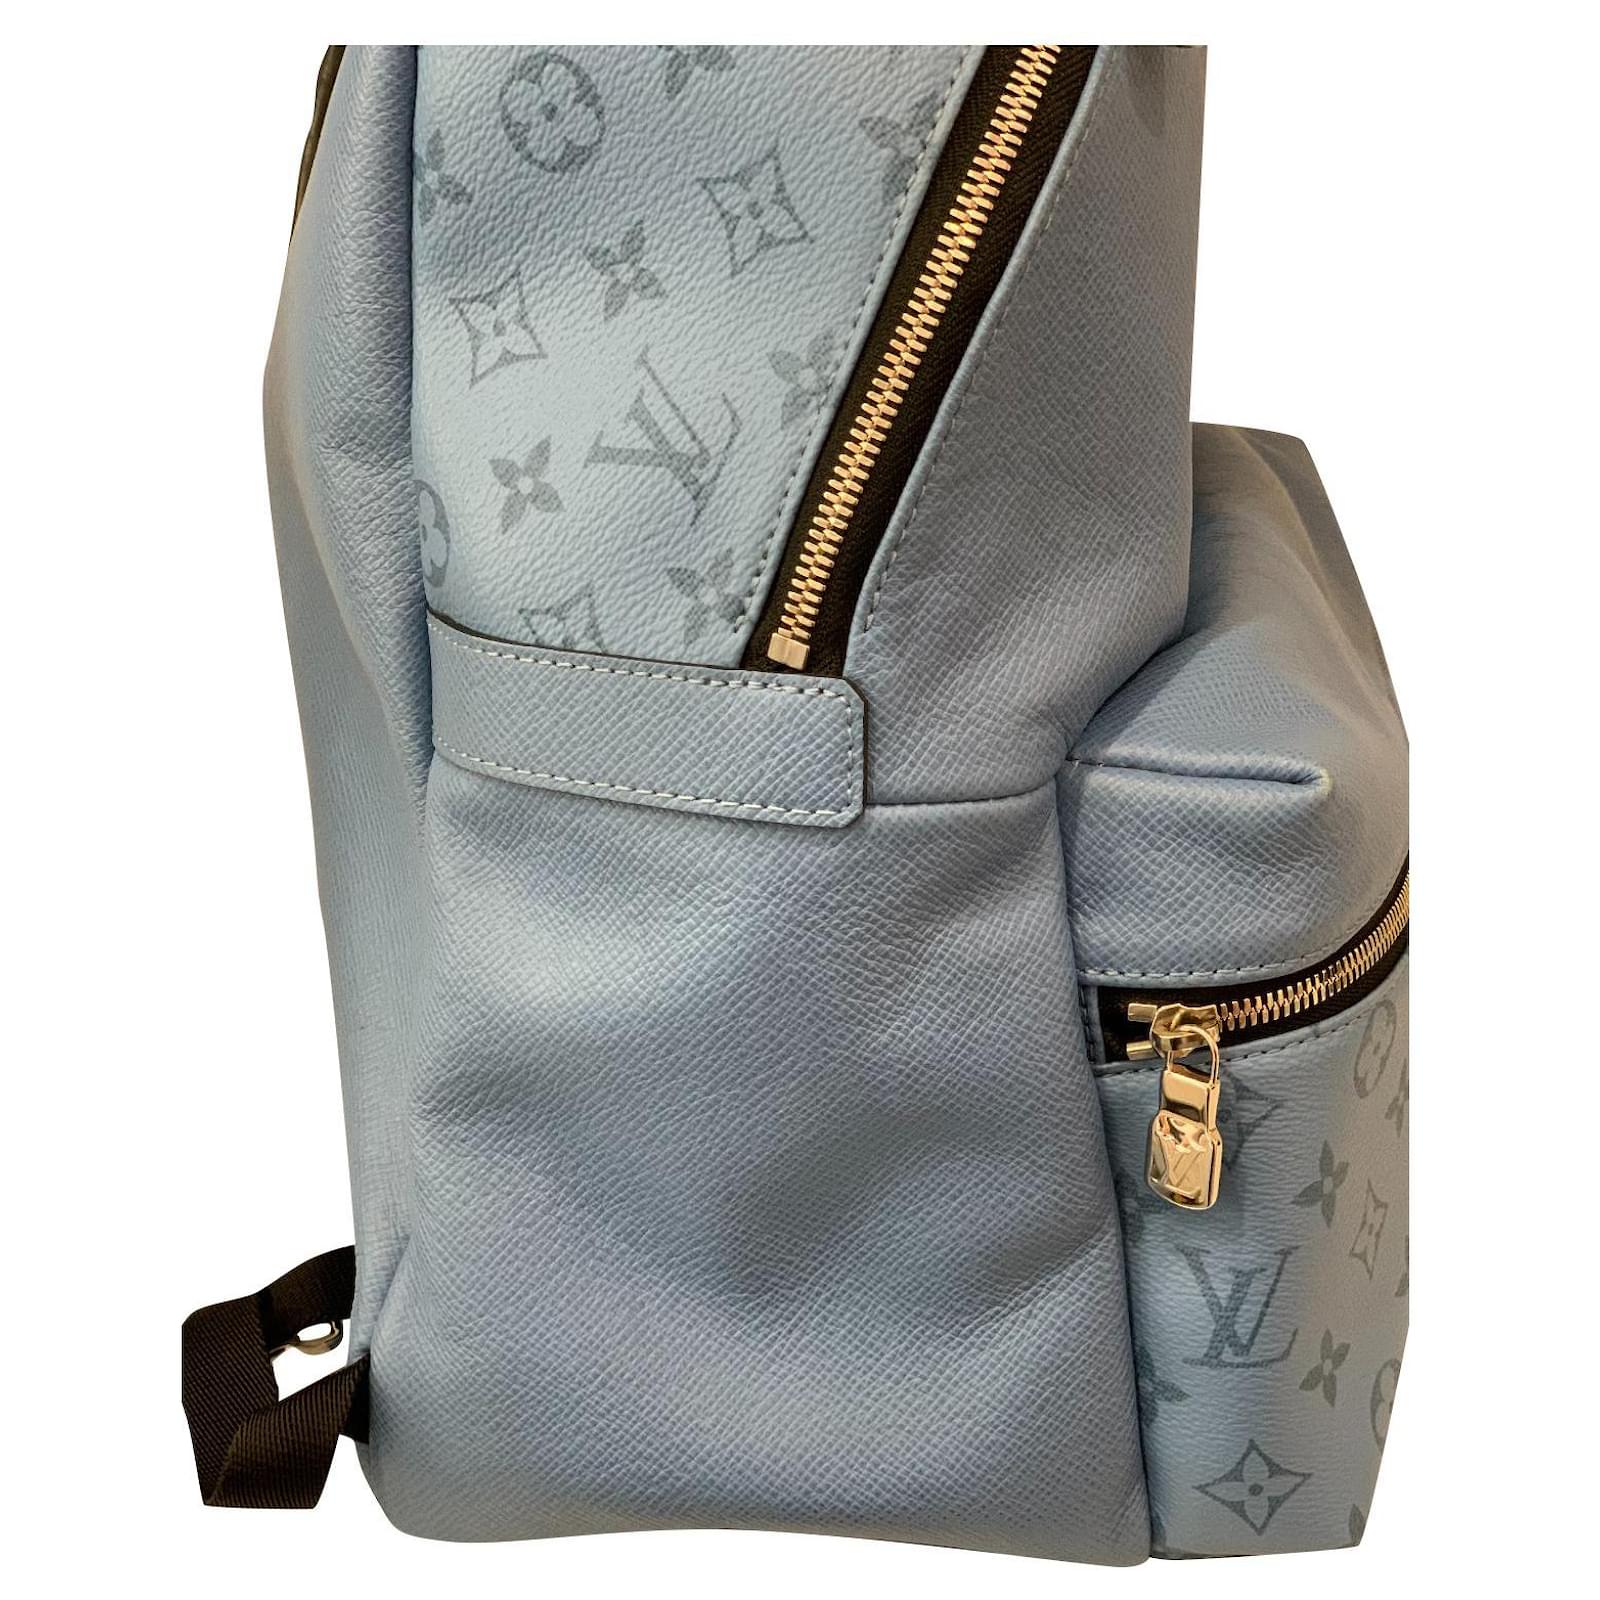 lv inspire backpack bags for women